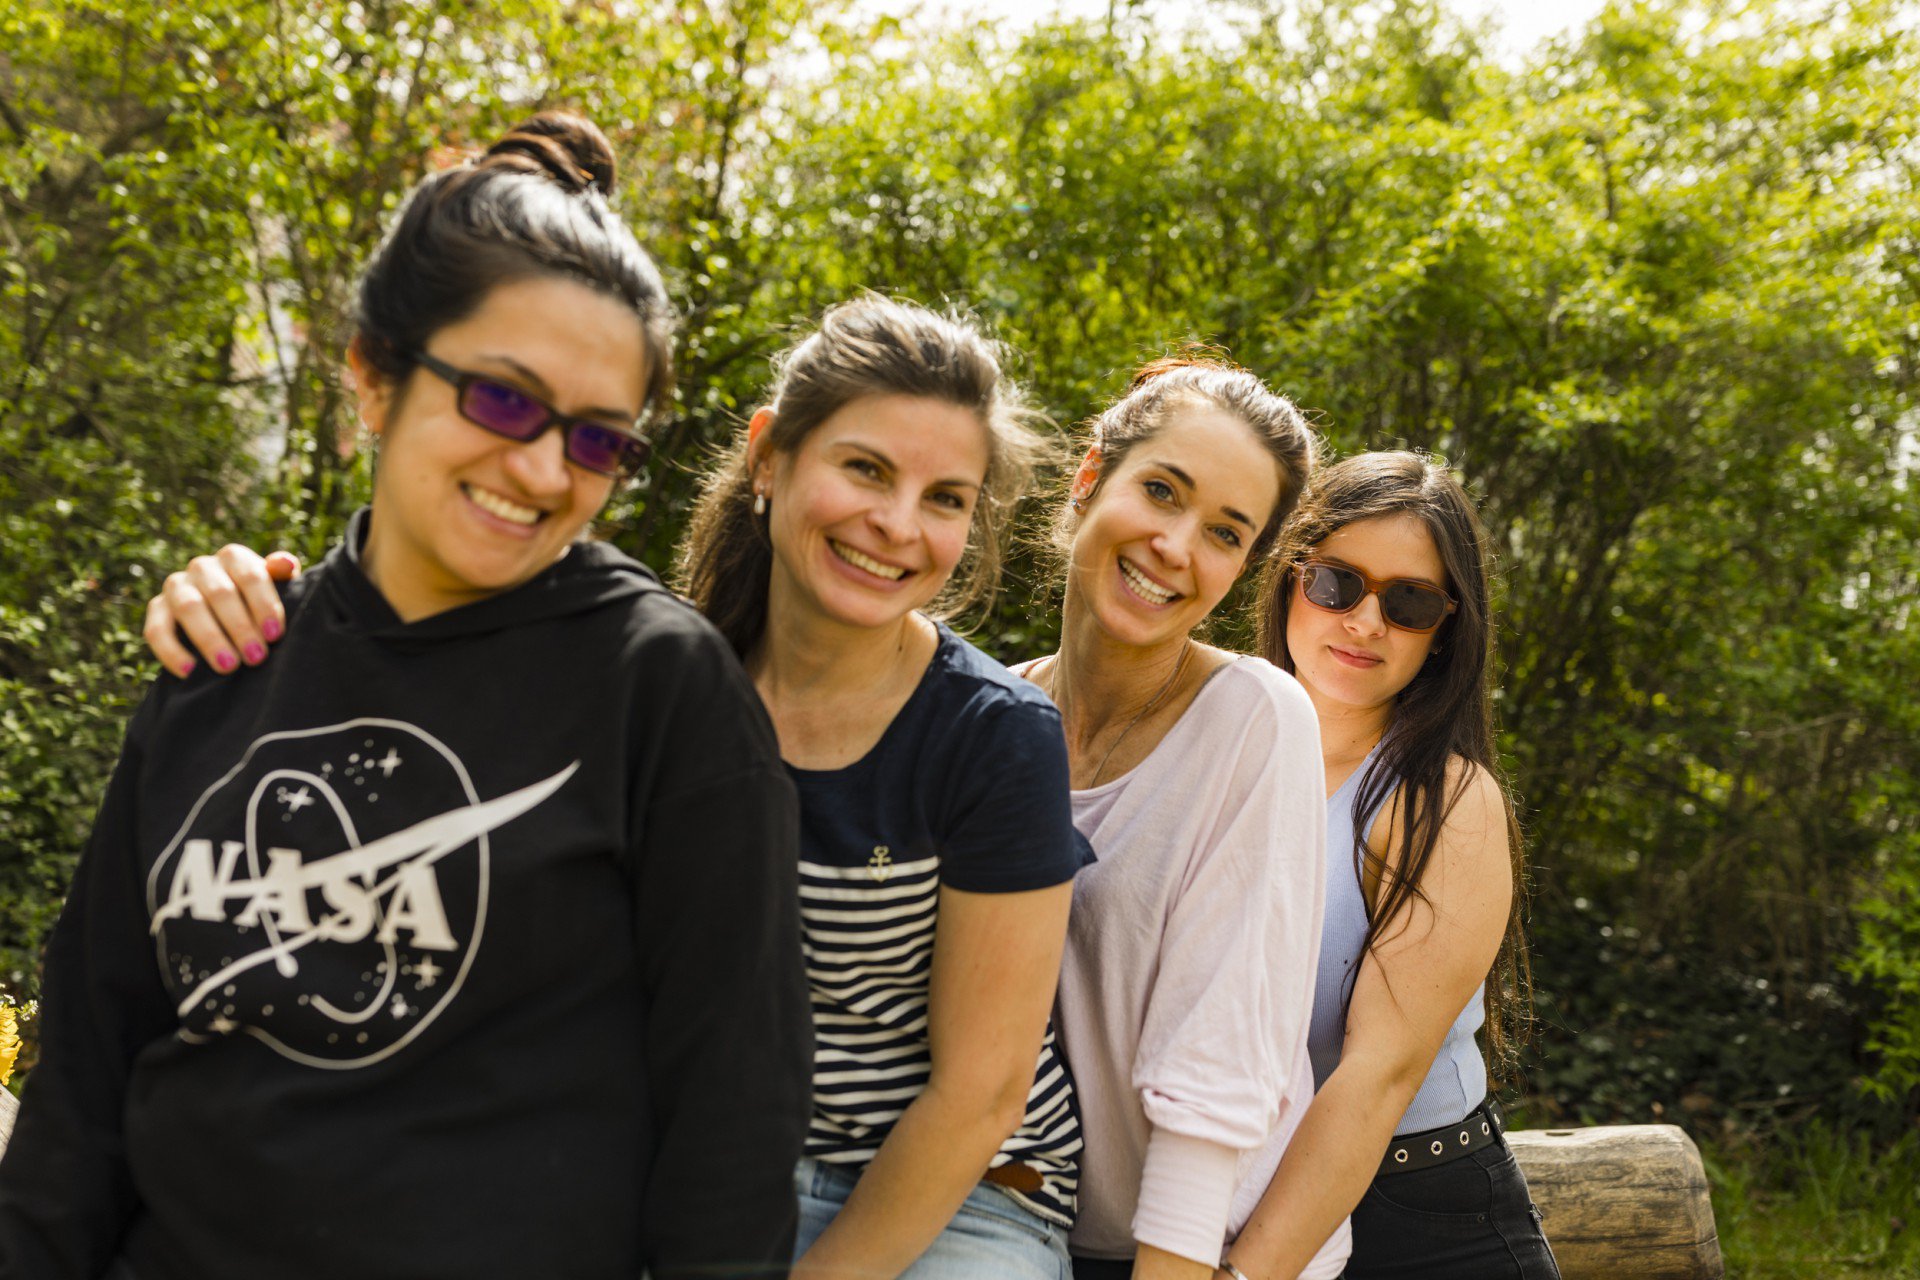 Das Team vom HOLA Oster Spielcamp. Von links nach rechts: Camila Manosalva, Kelly Parra Camacho, Eva Winkelmann und Laura Valero